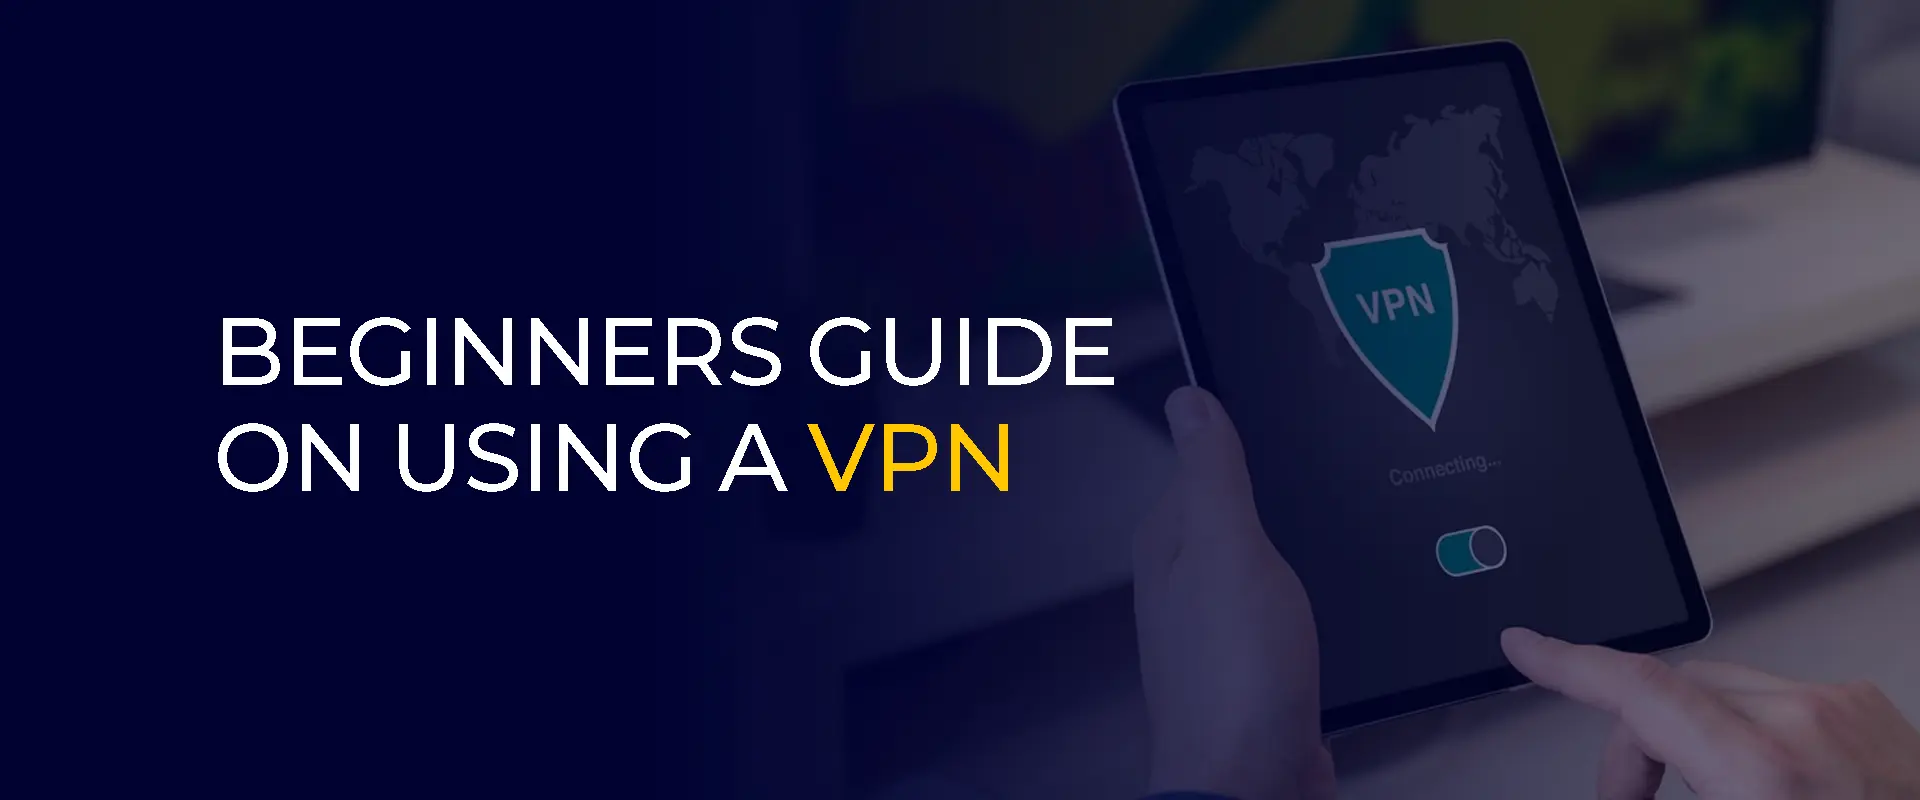 Guida per principianti sull'utilizzo di una VPN